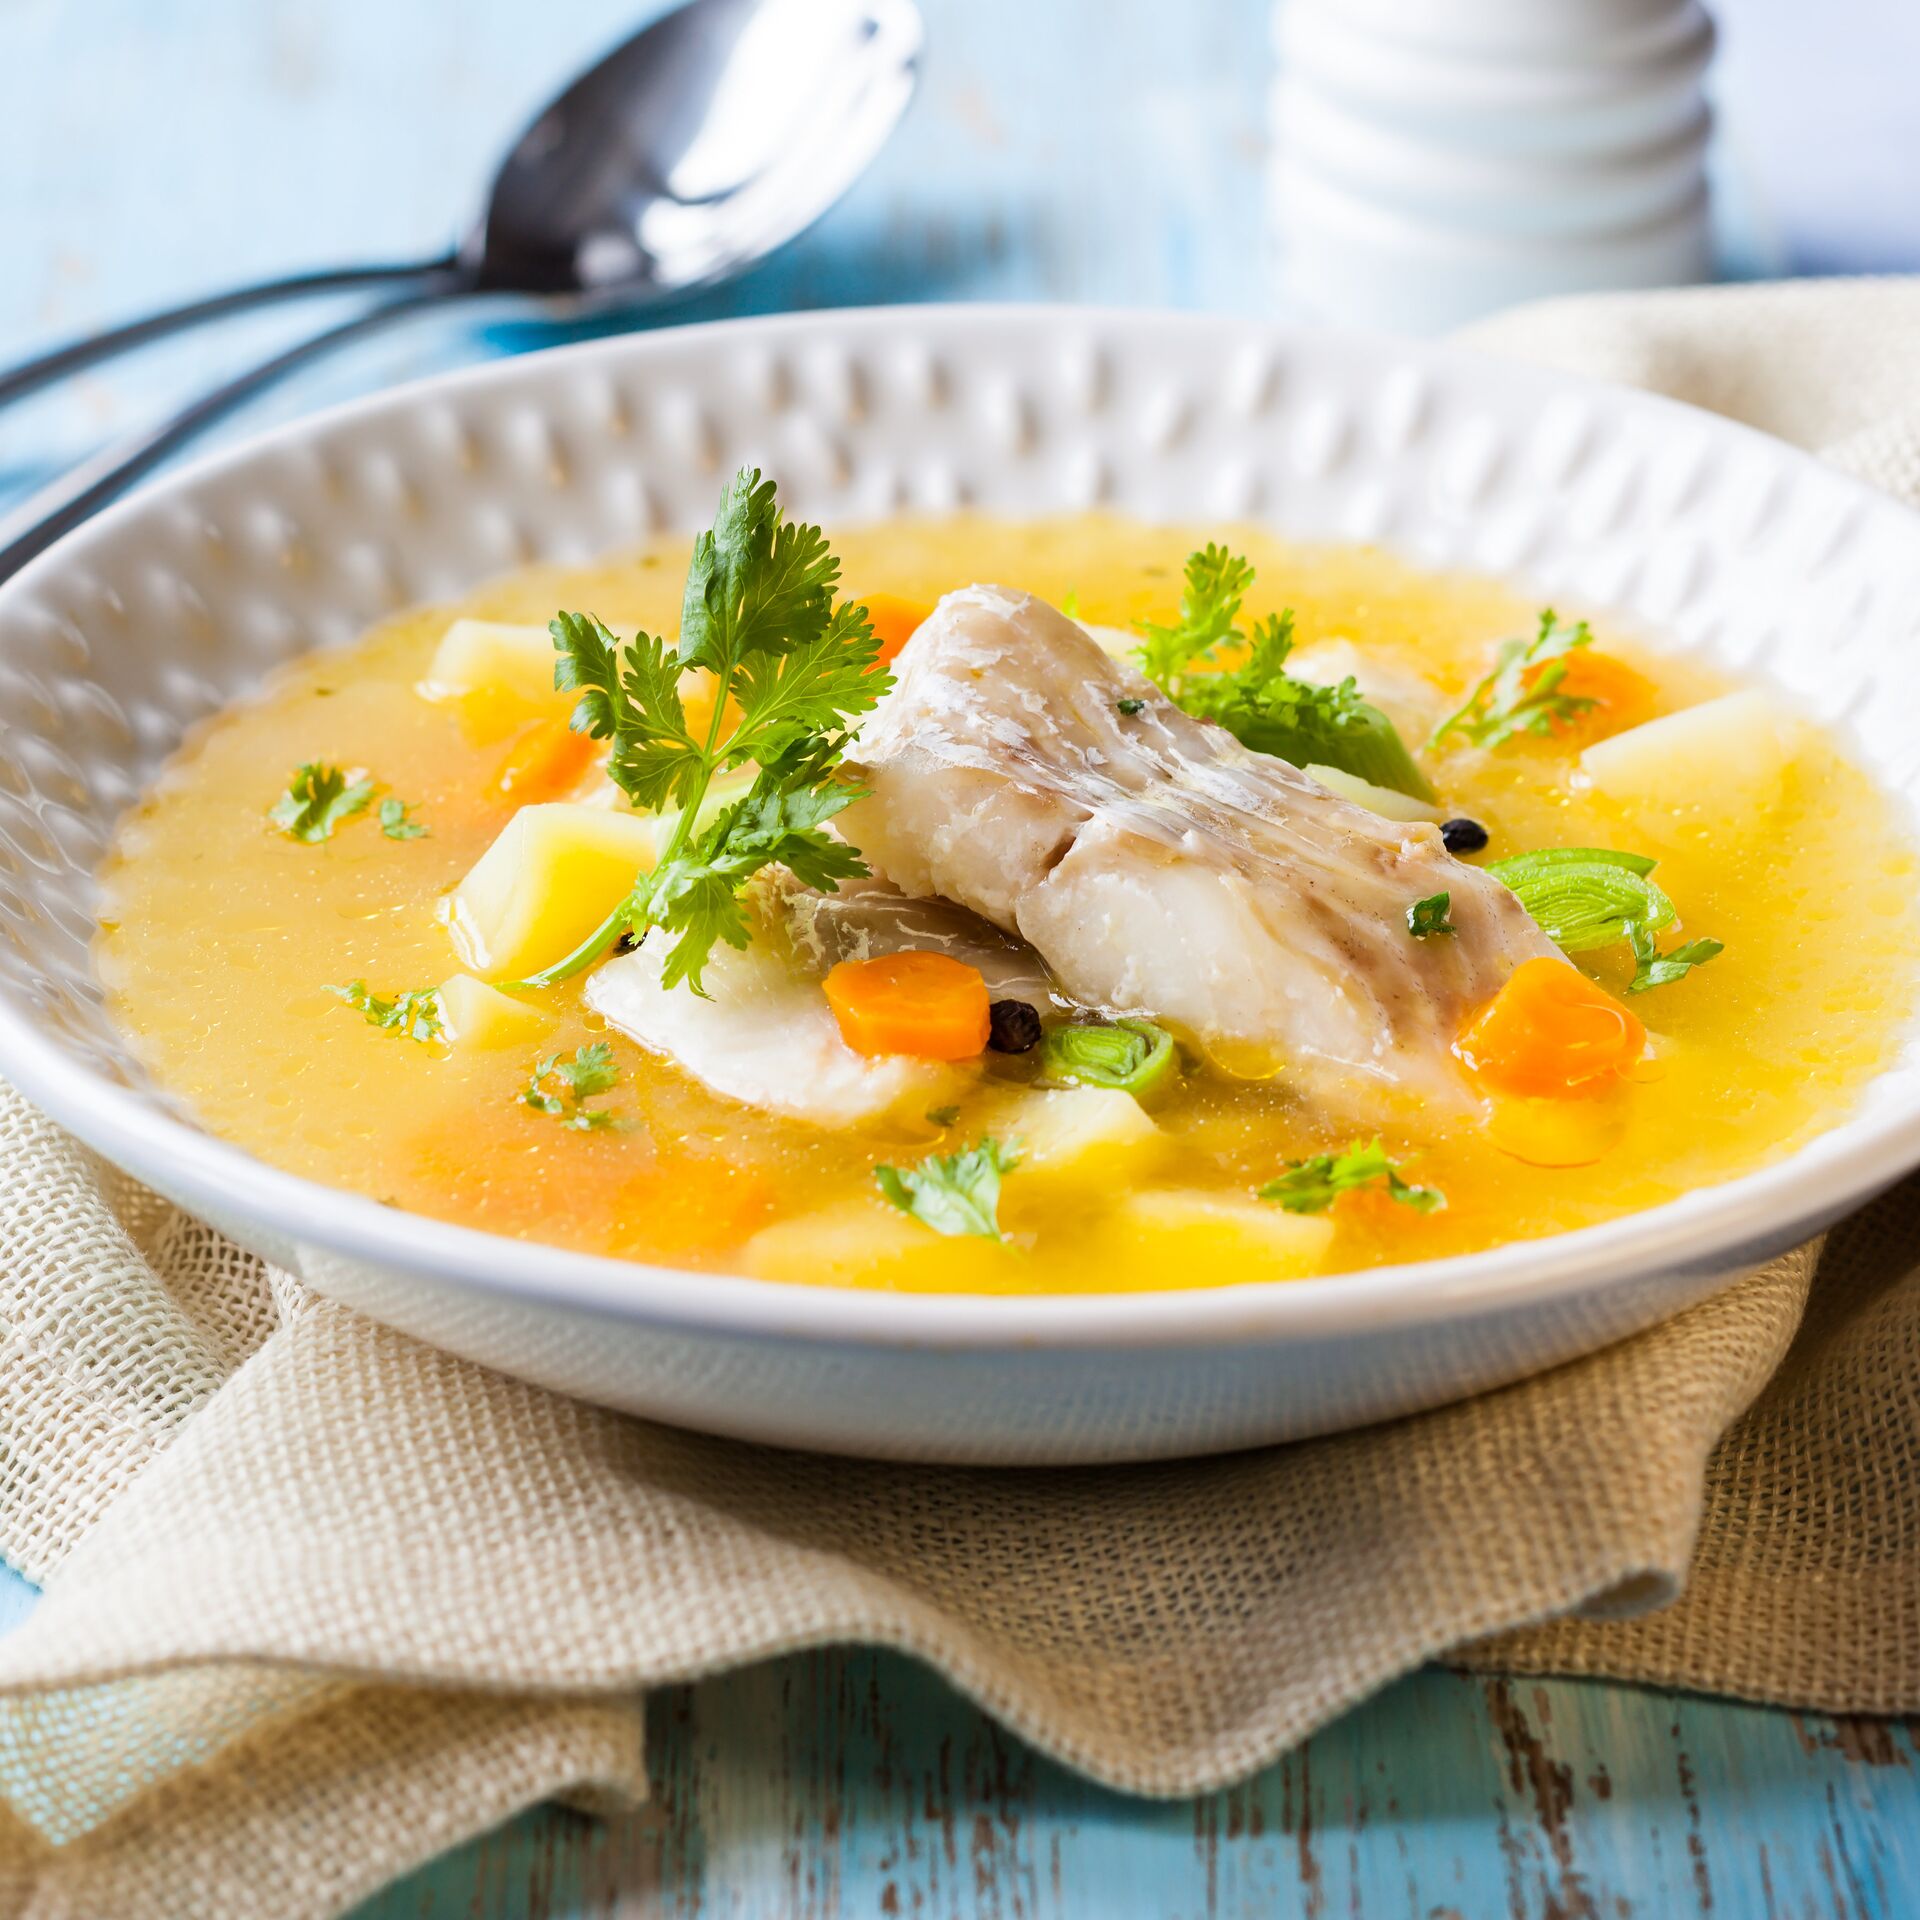 Супы – вкусных рецептов с фото, простые рецепты супа